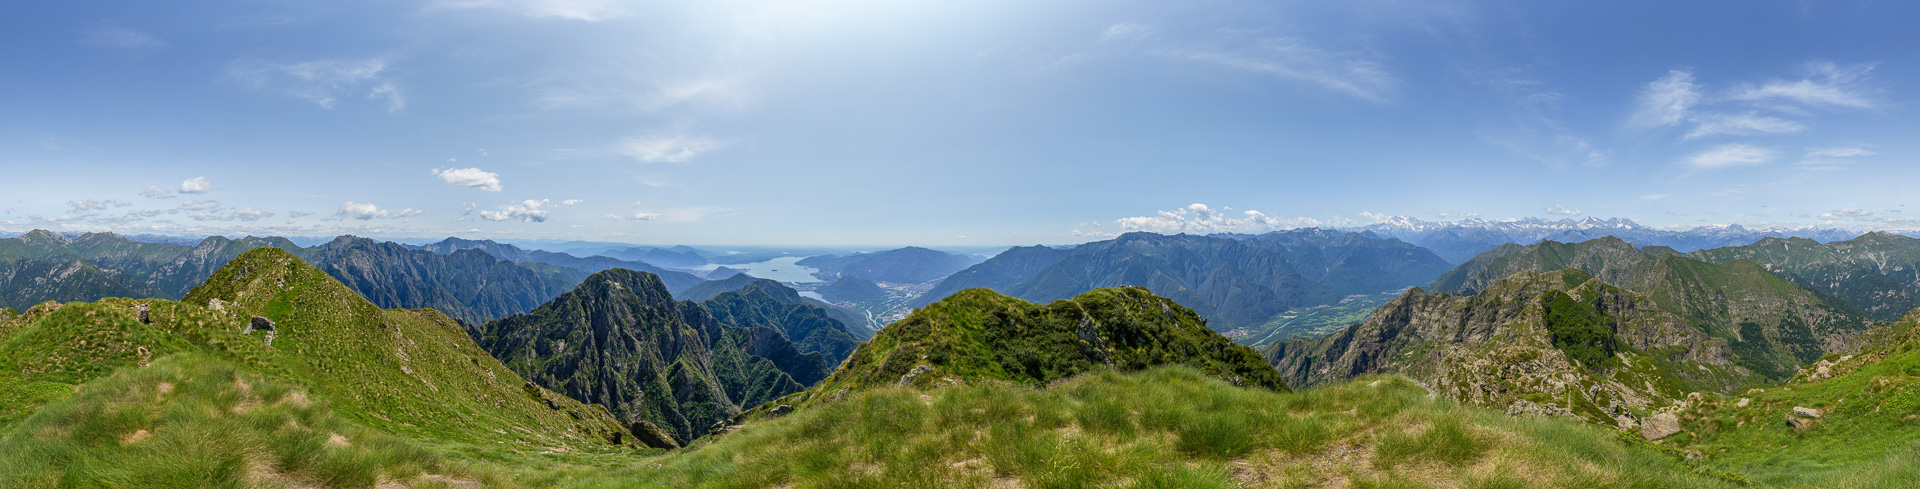 Herausragendes Panorama zwischen Tiefebene und Hochgebirge